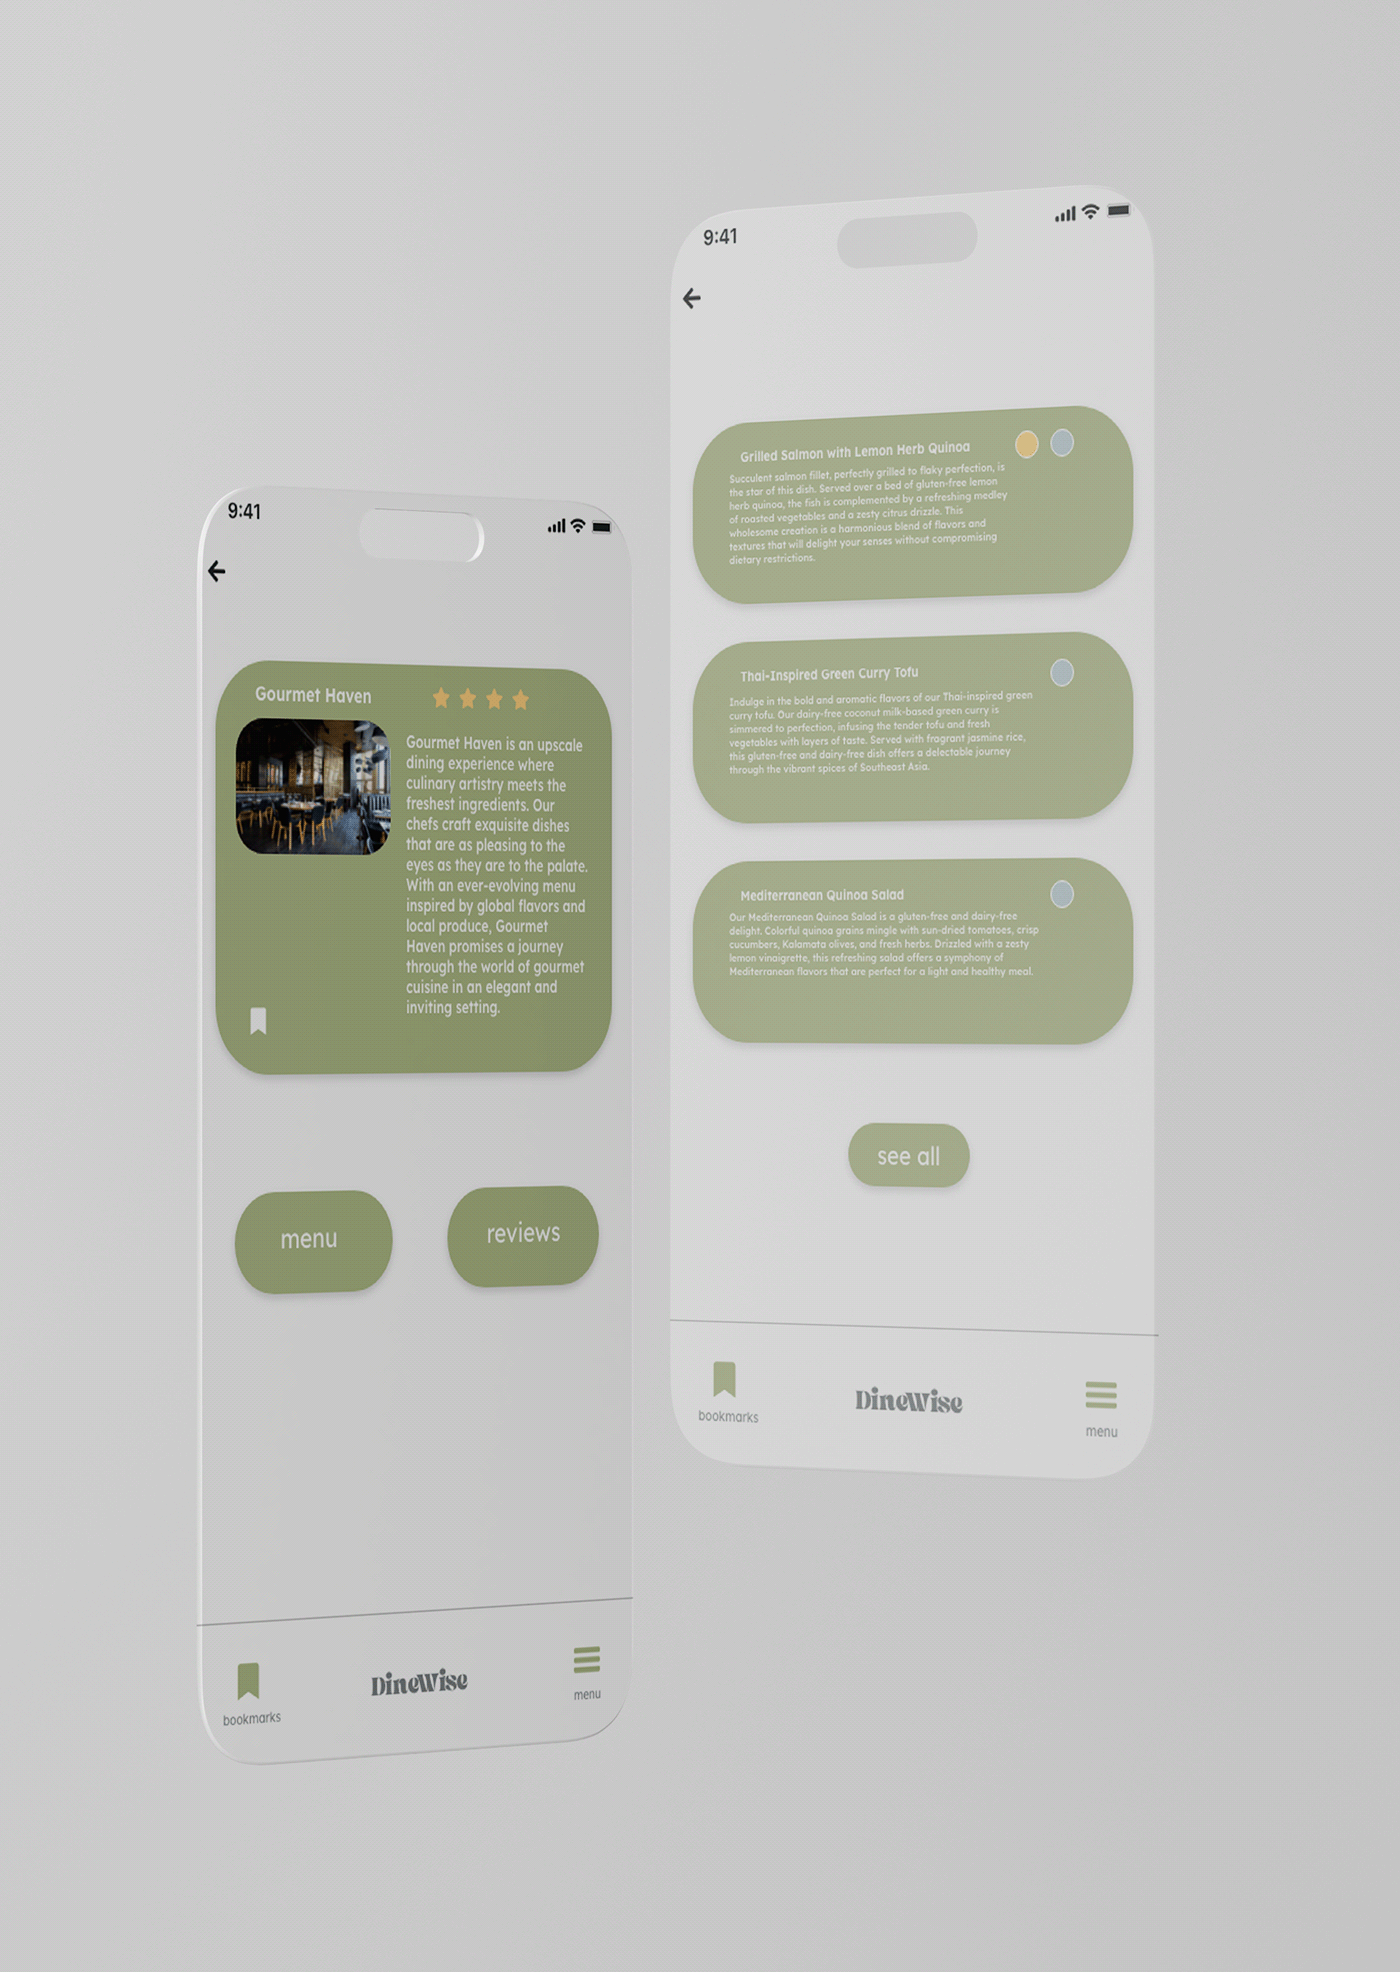 design app design UI/UX ui design user interface Mobile app user experience Interface mobile application